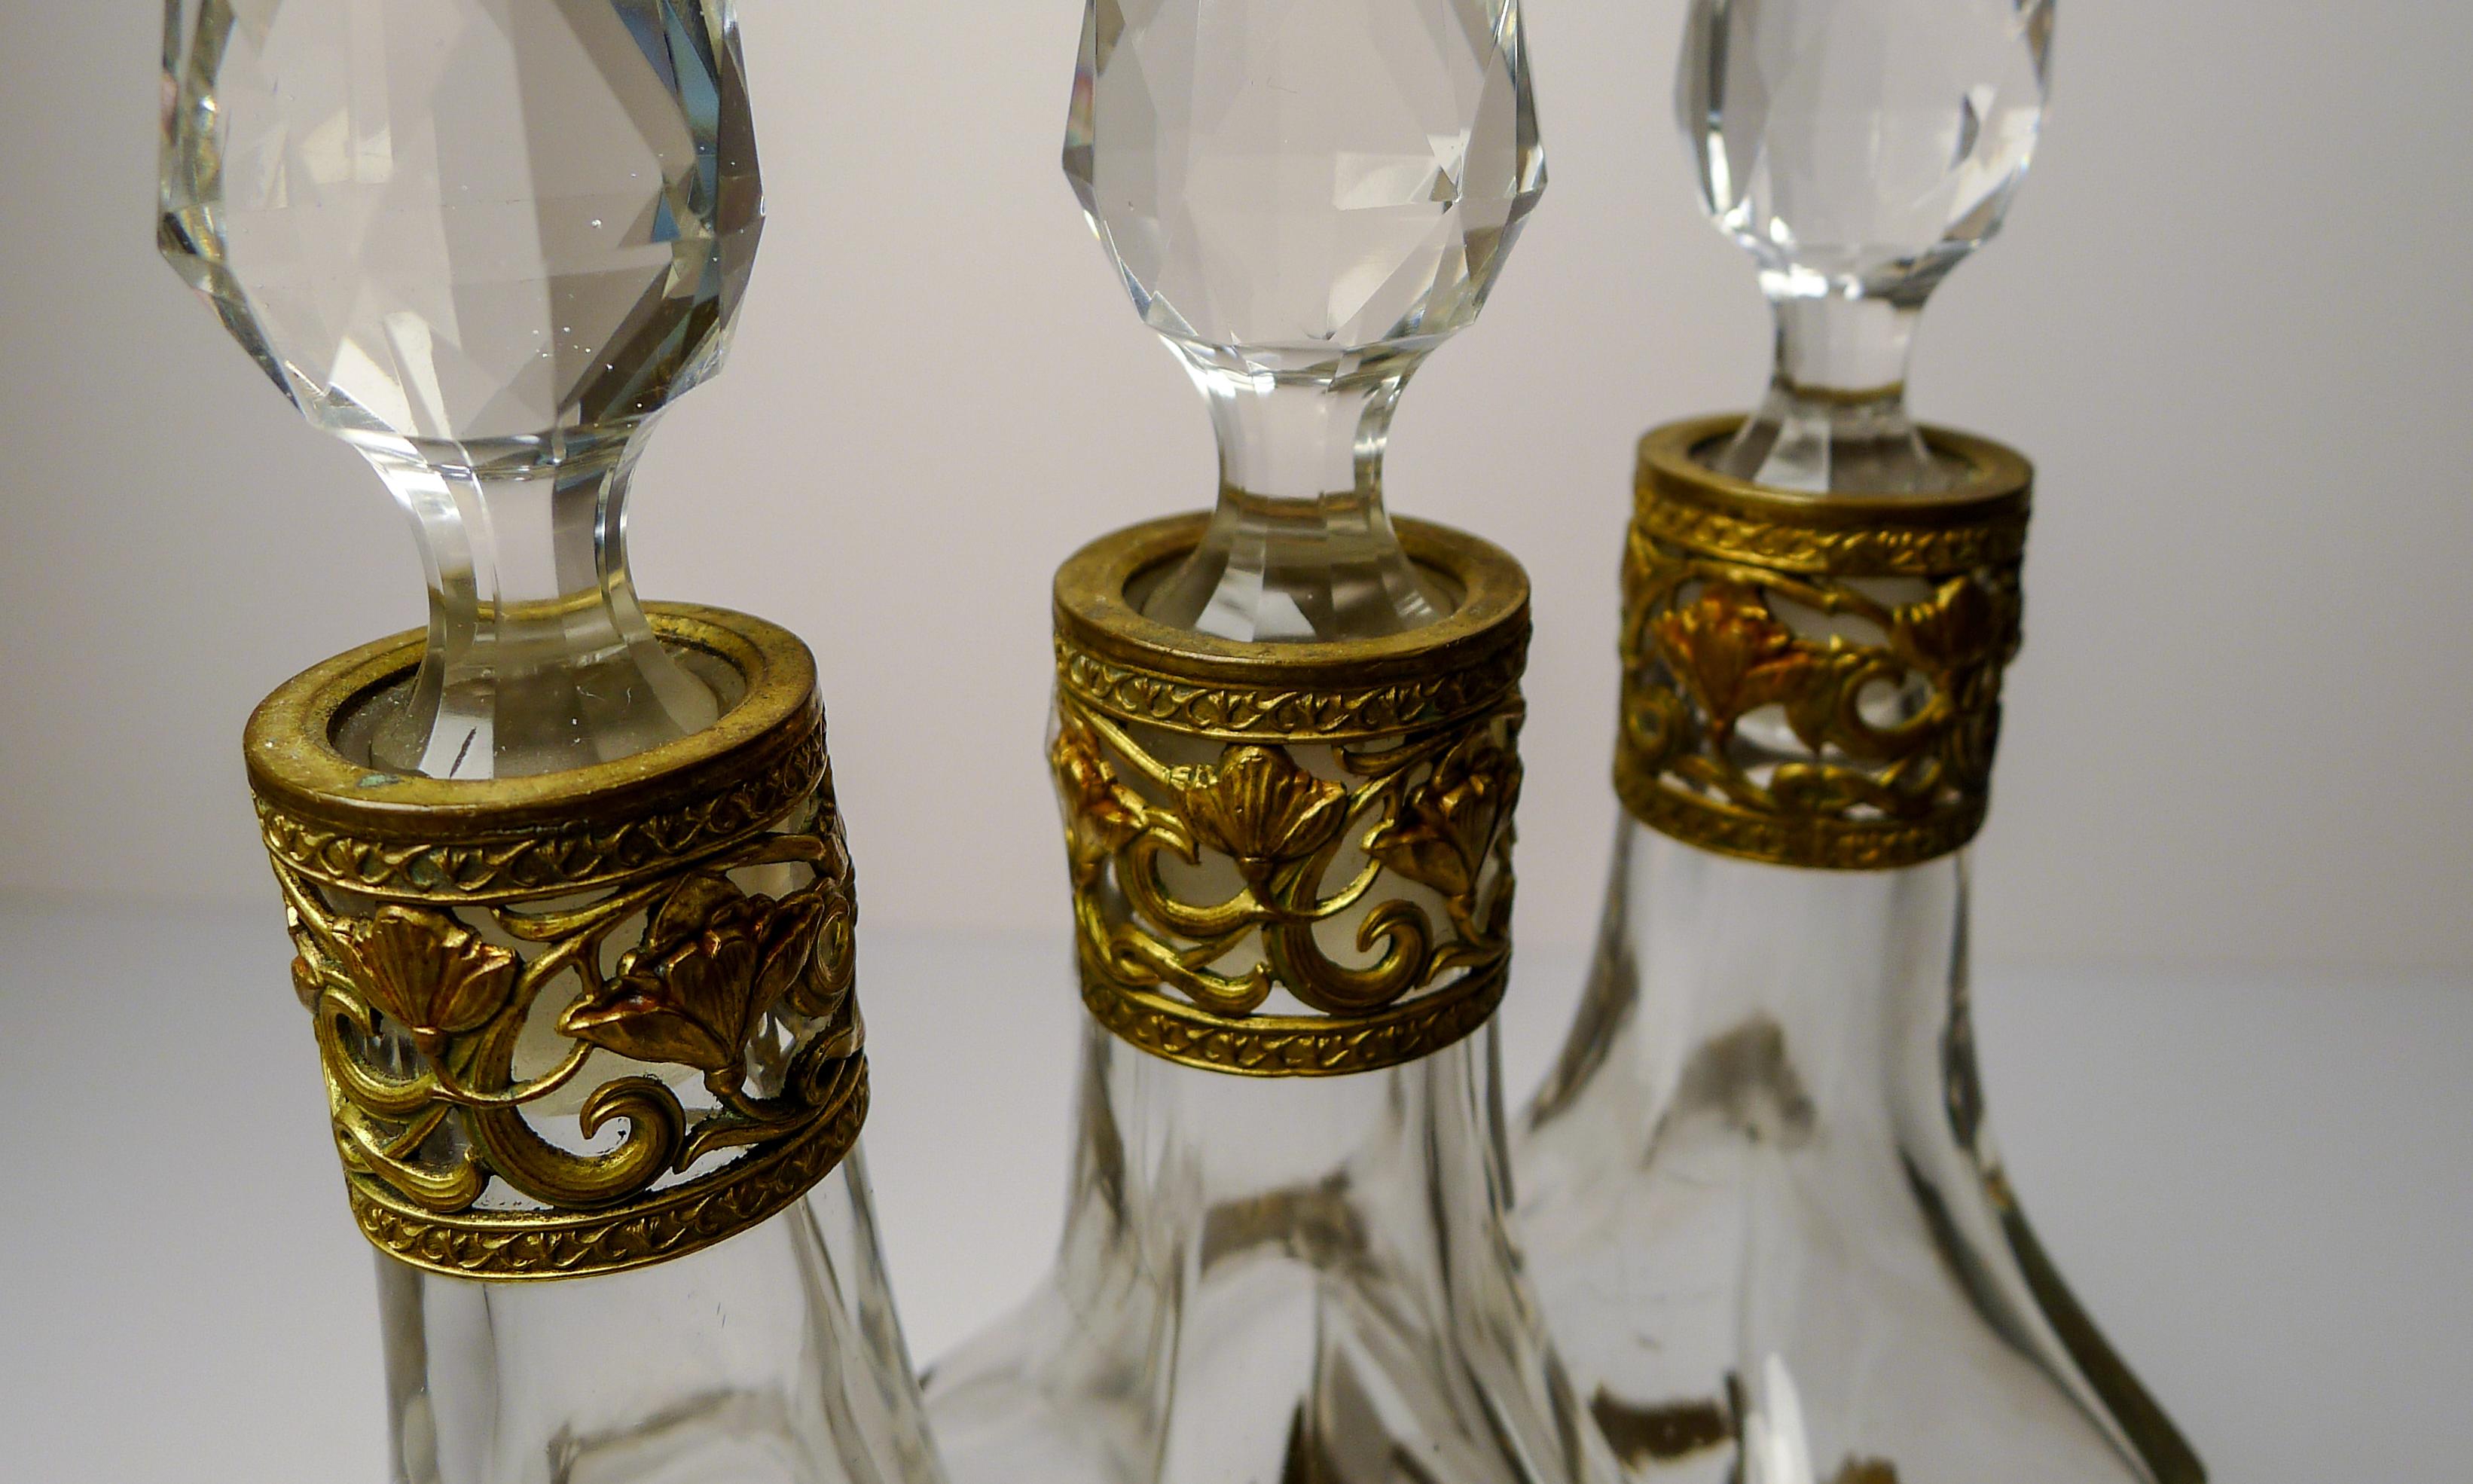 French Art Nouveau Liquor Decanter Set / Perfume Caddy c.1900 For Sale 5